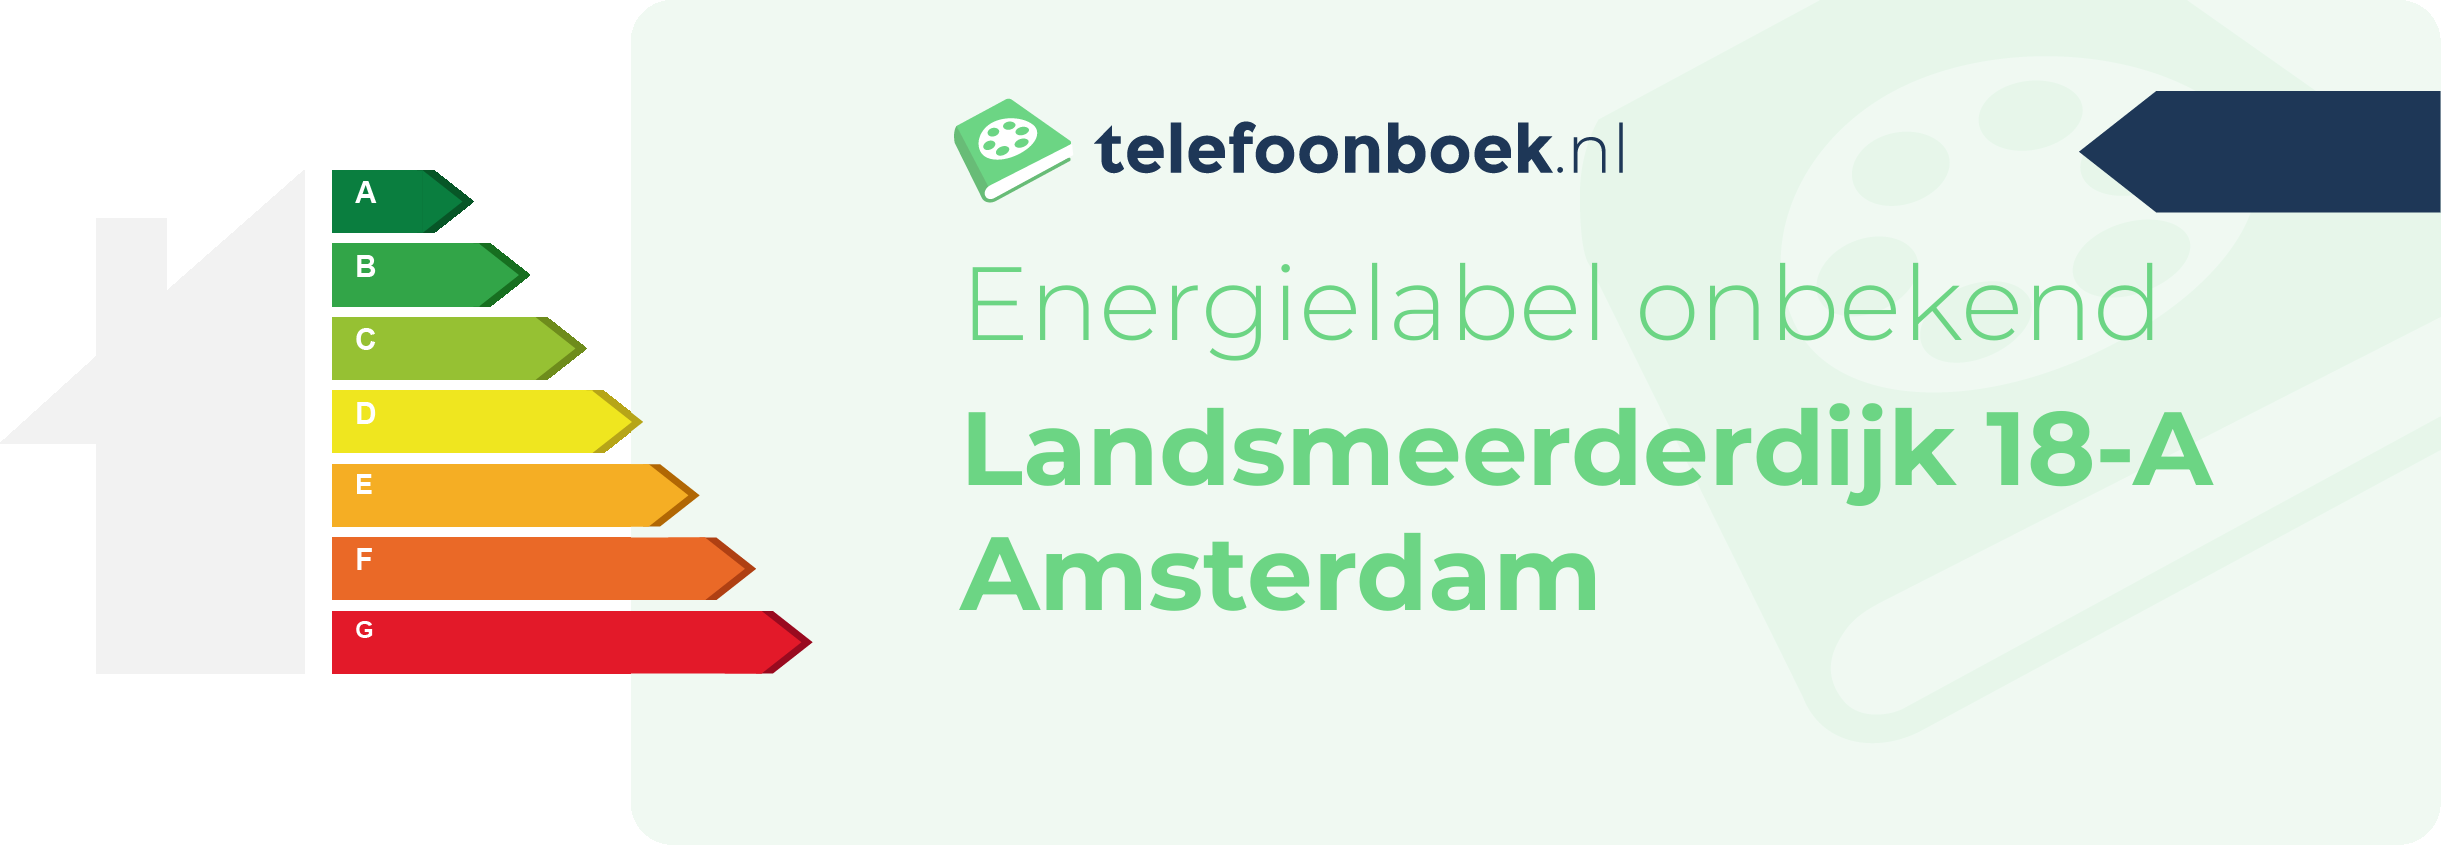 Energielabel Landsmeerderdijk 18-A Amsterdam